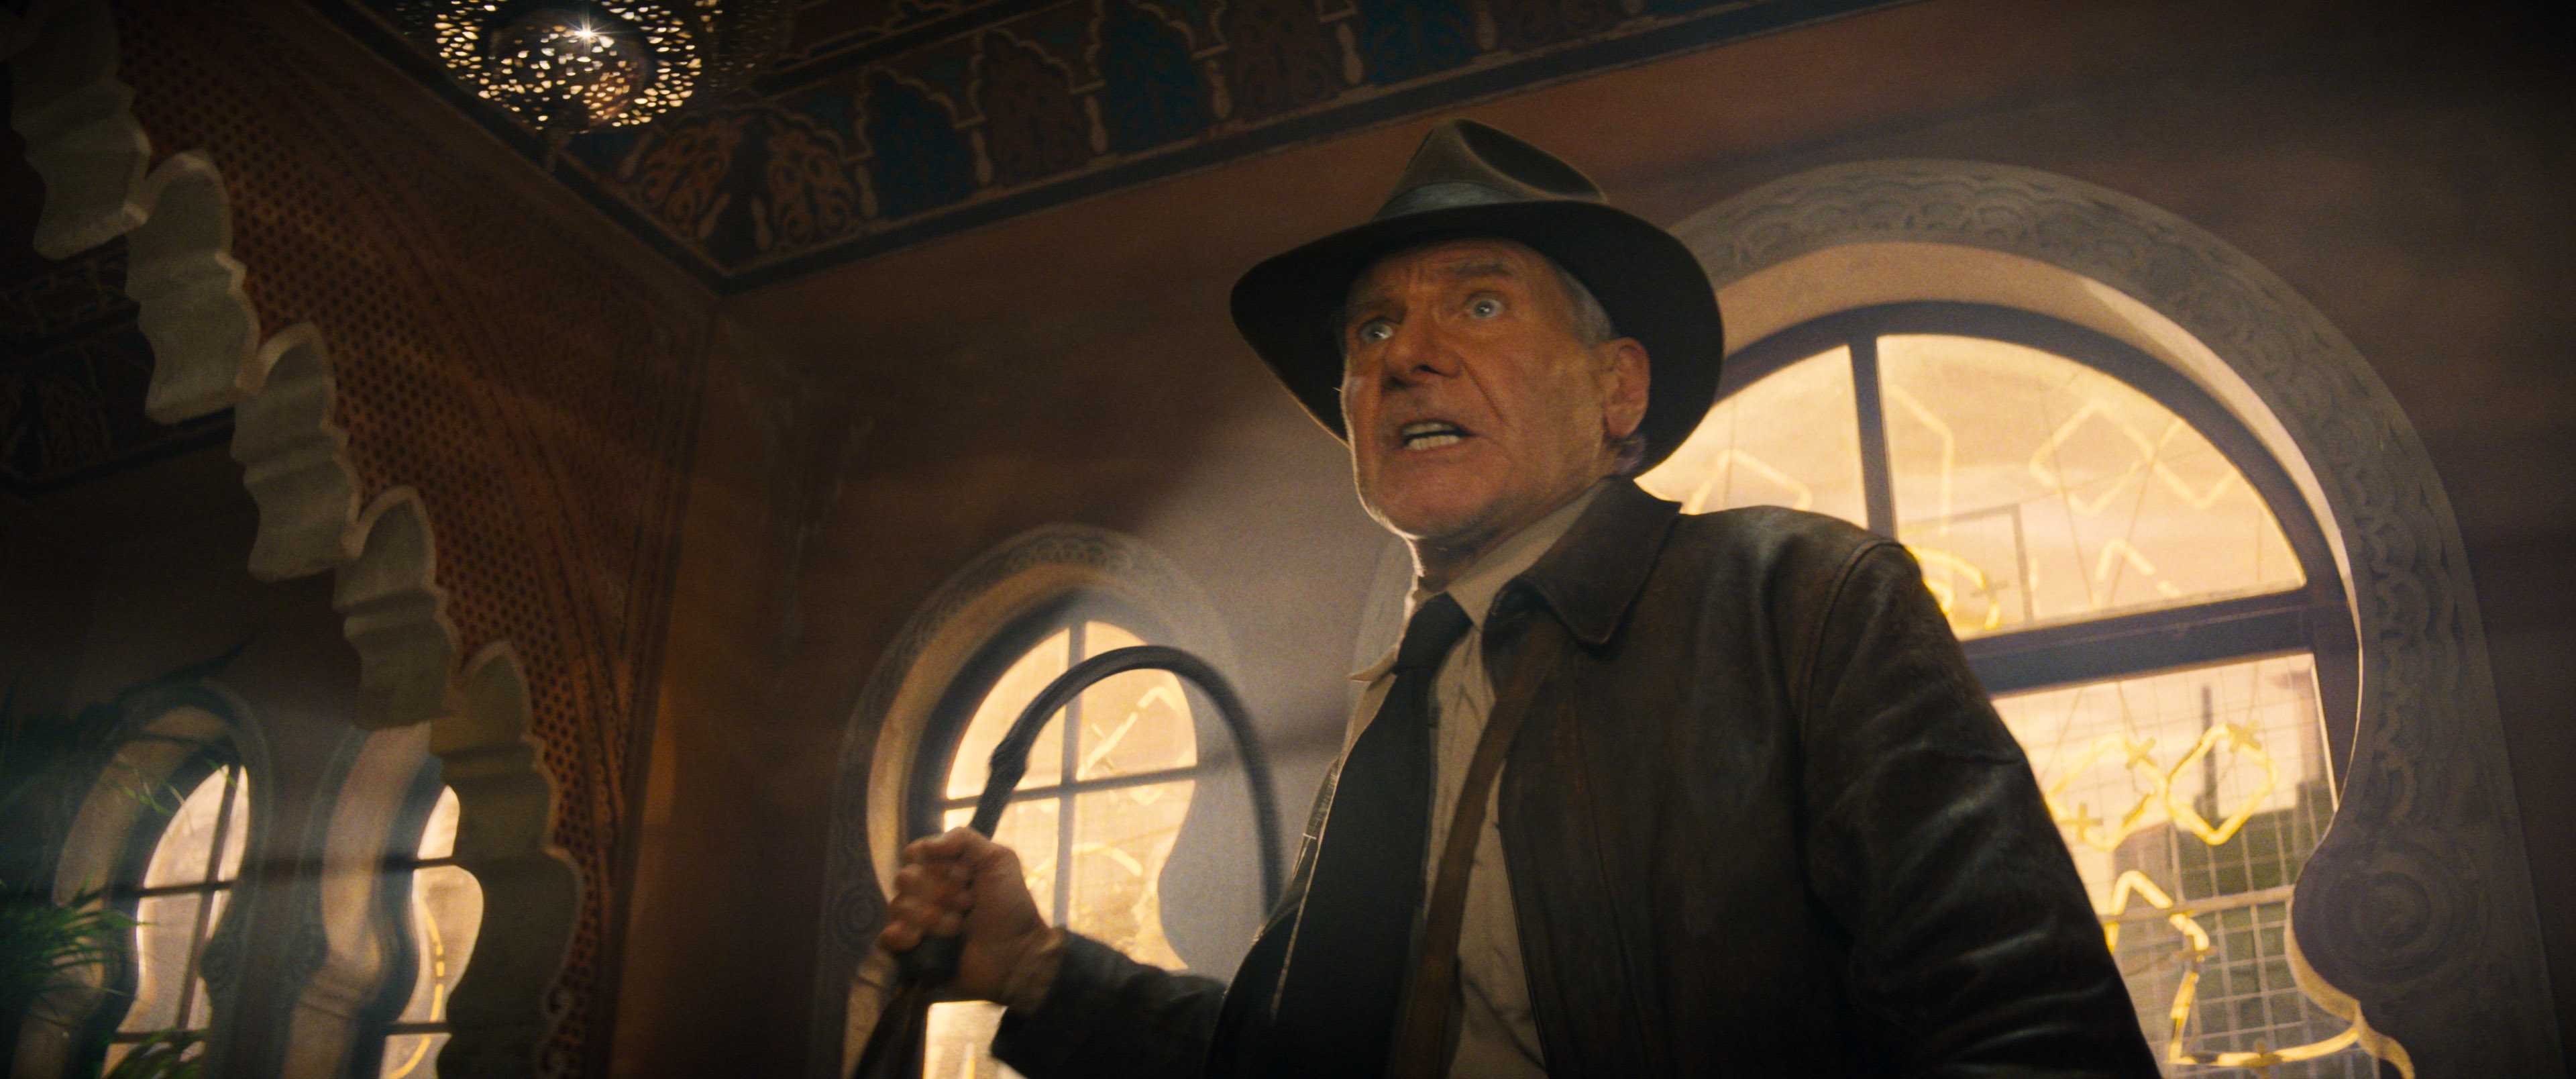 Já pode ver o novo (e derradeiro) filme da saga “Indiana Jones” na Disney+  – NiT